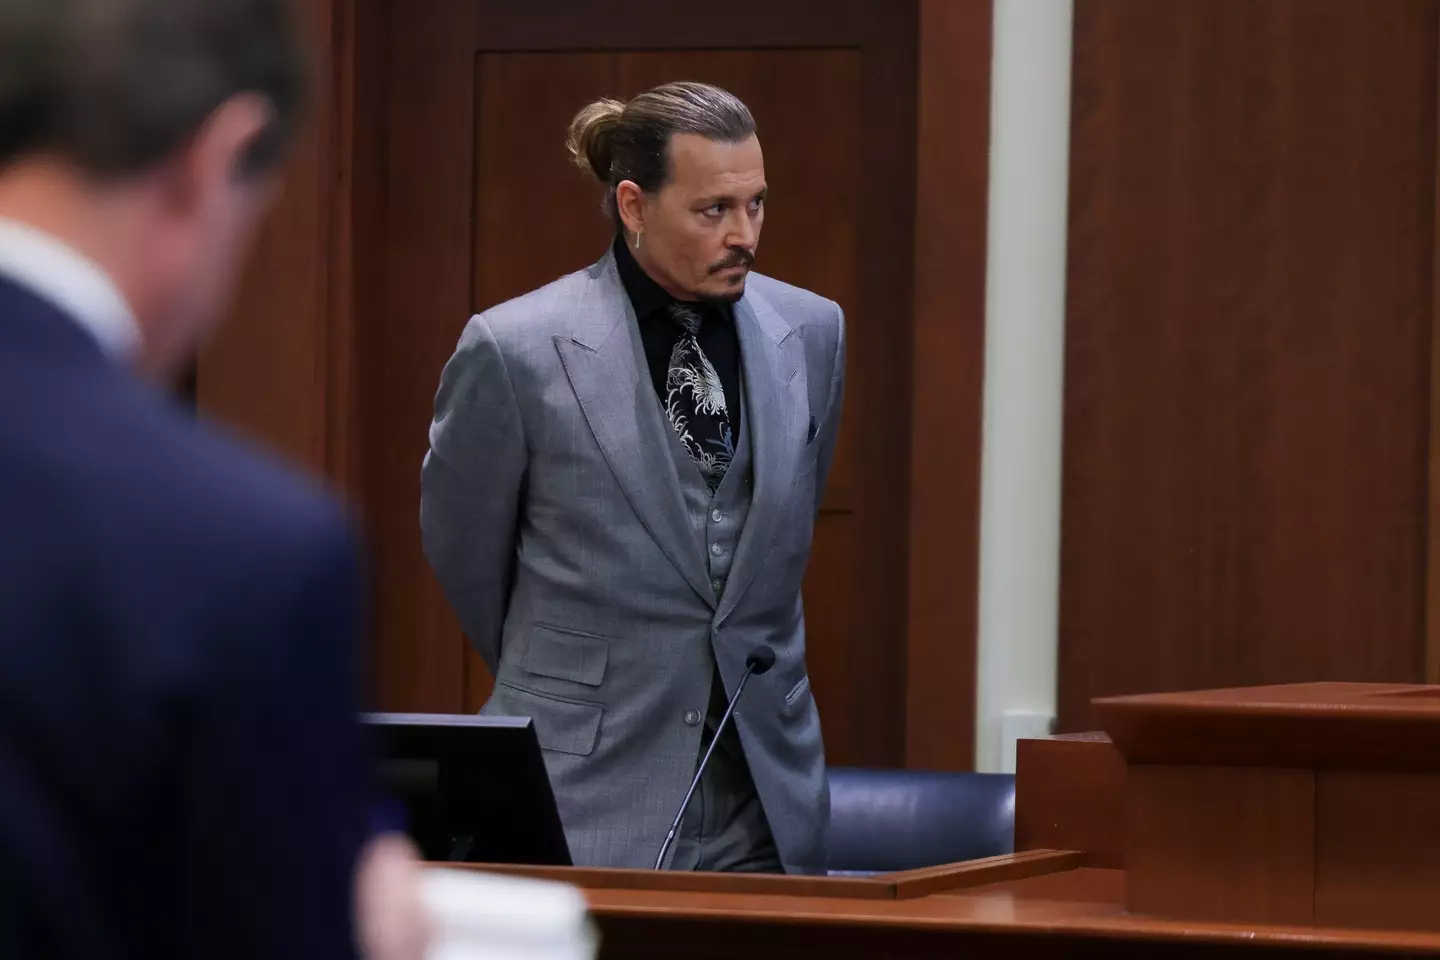 Johnny Depp sued Heard for defaming him.